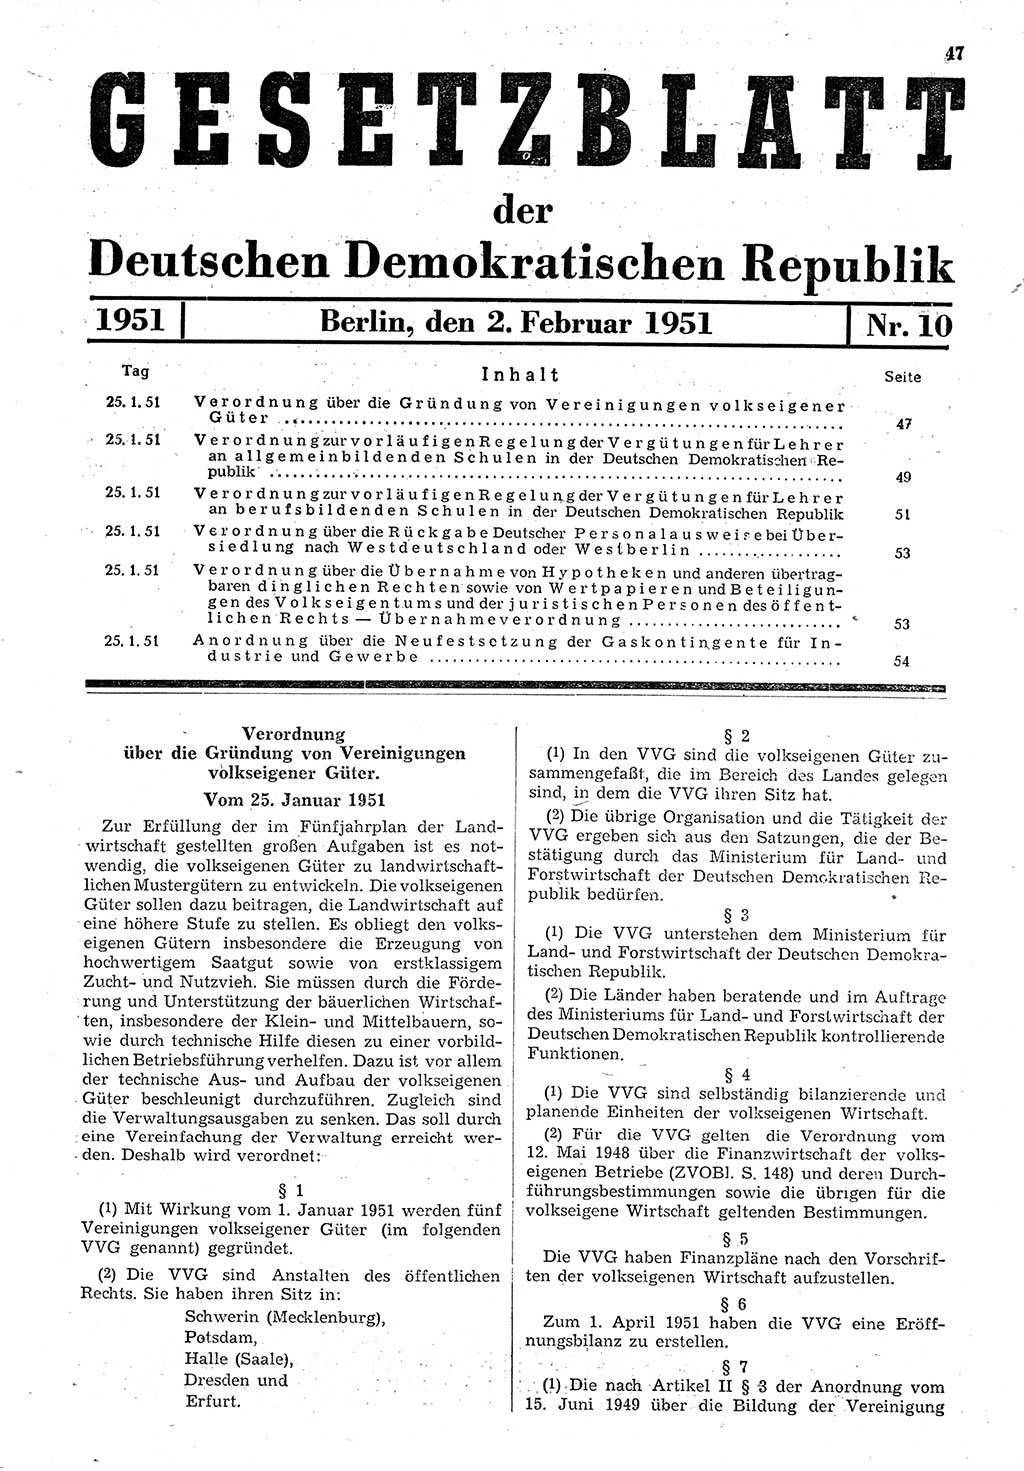 Gesetzblatt (GBl.) der Deutschen Demokratischen Republik (DDR) 1951, Seite 47 (GBl. DDR 1951, S. 47)